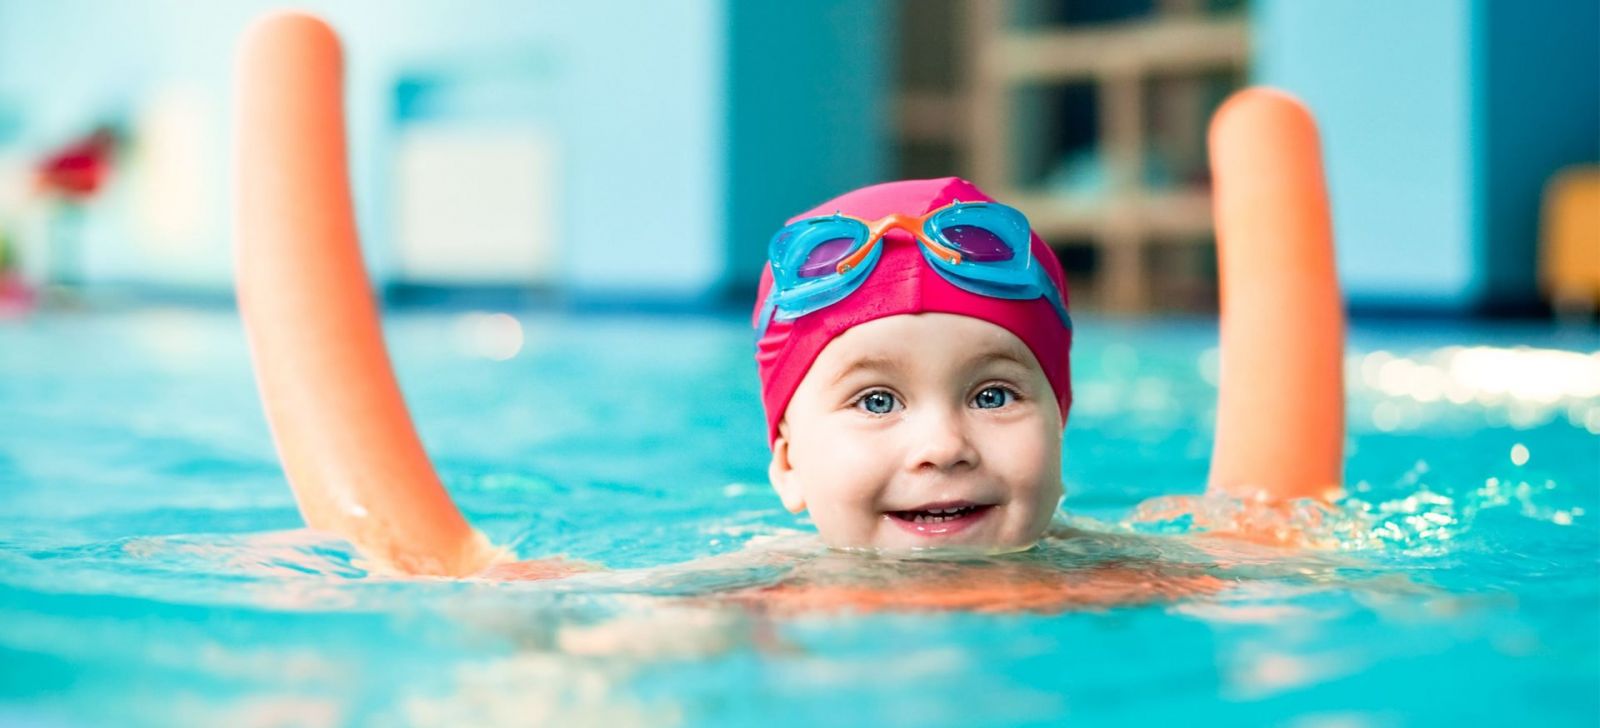 Bơi lội là môn thể thao giúp bé tăng chiều cao rất tốt